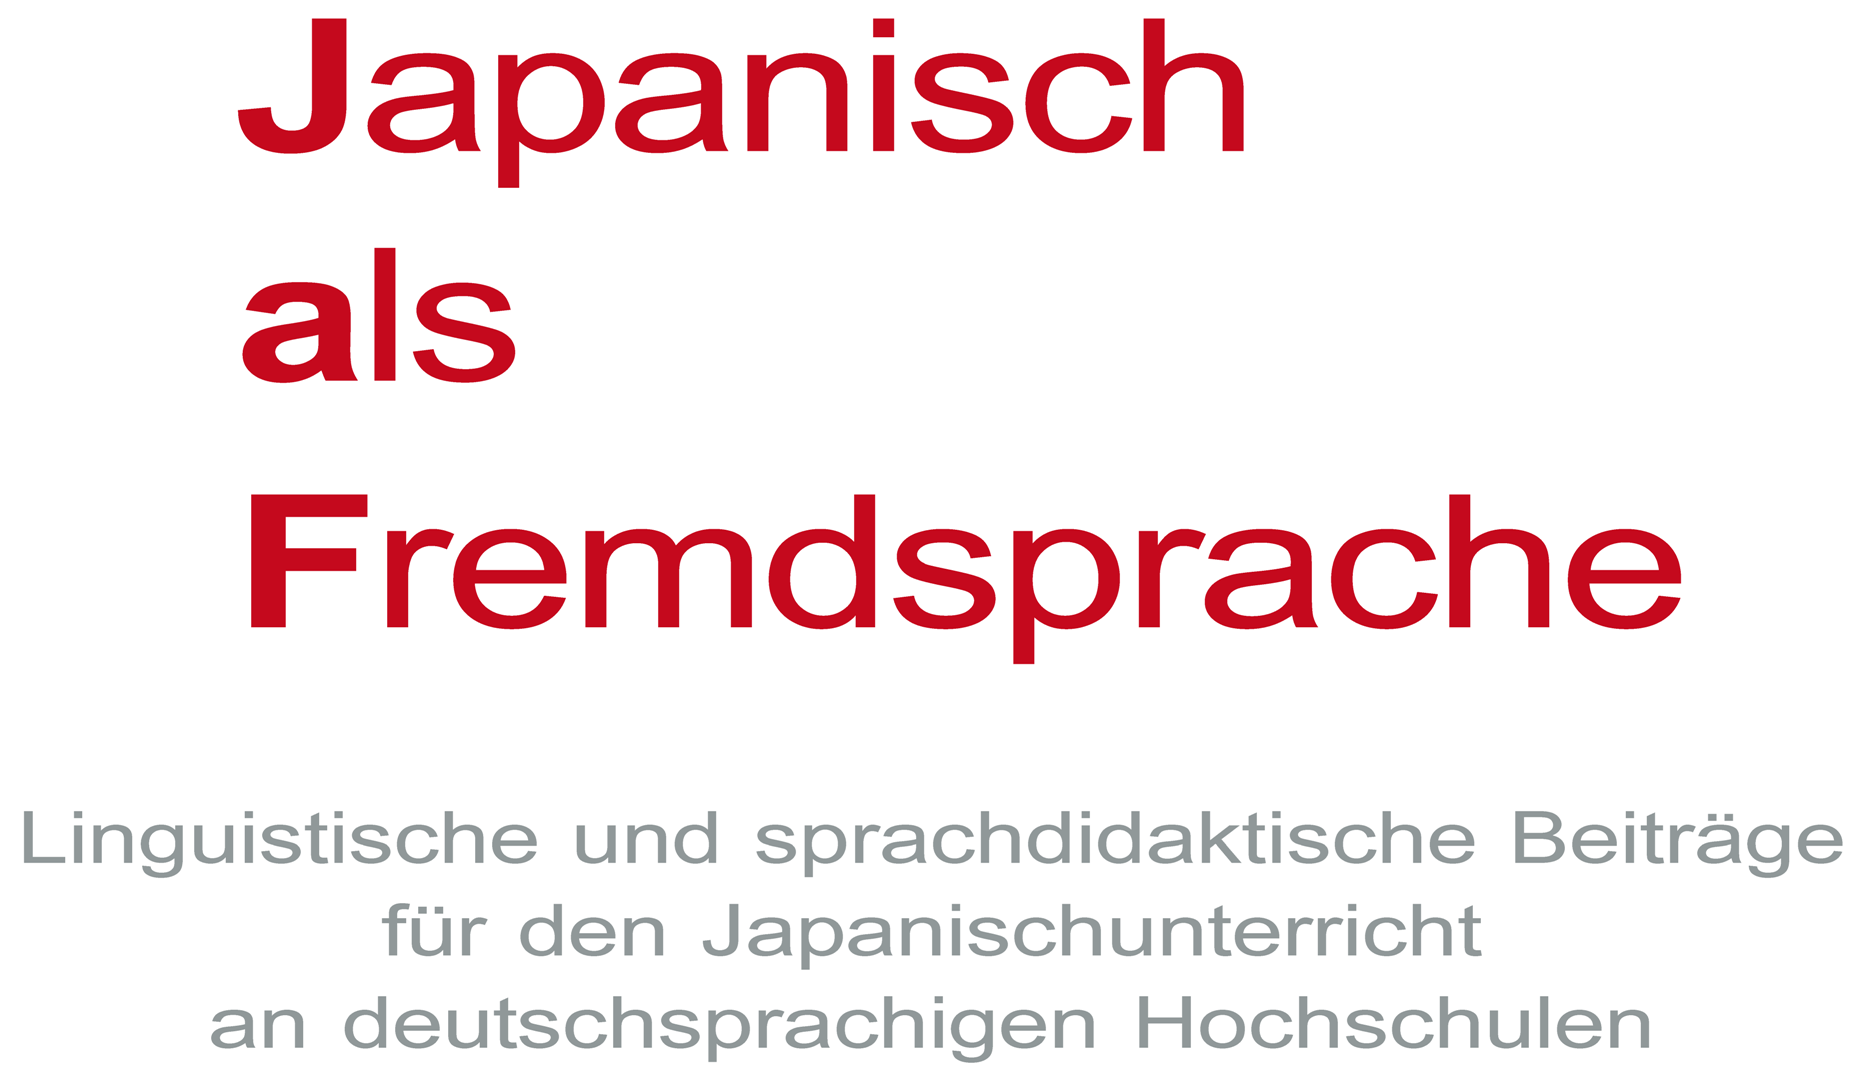 Japanisch als Fremdsprache: Linguistische und sprachdidaktische Beiträge für den Japanischunterricht an deutschsprachigen Hochschulen